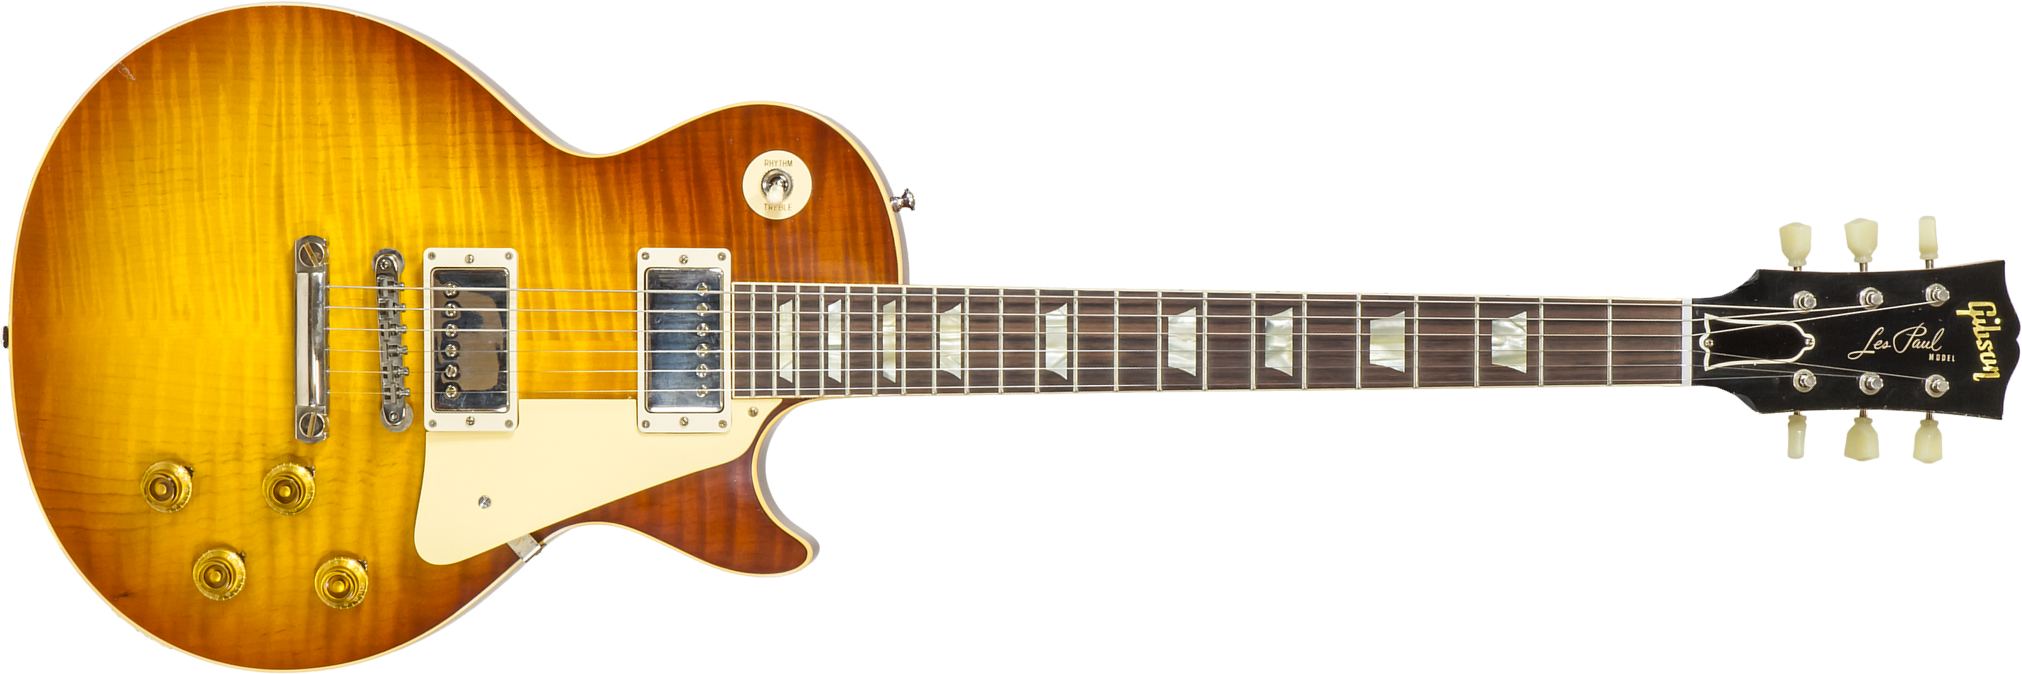 Gibson Custom Shop M2m Les Paul Standard 1959 2h Ht Rw #933187 - Murphy Lab Light Aged Slow Ice Tea Fade - Guitare Électrique Single Cut - Main pictur